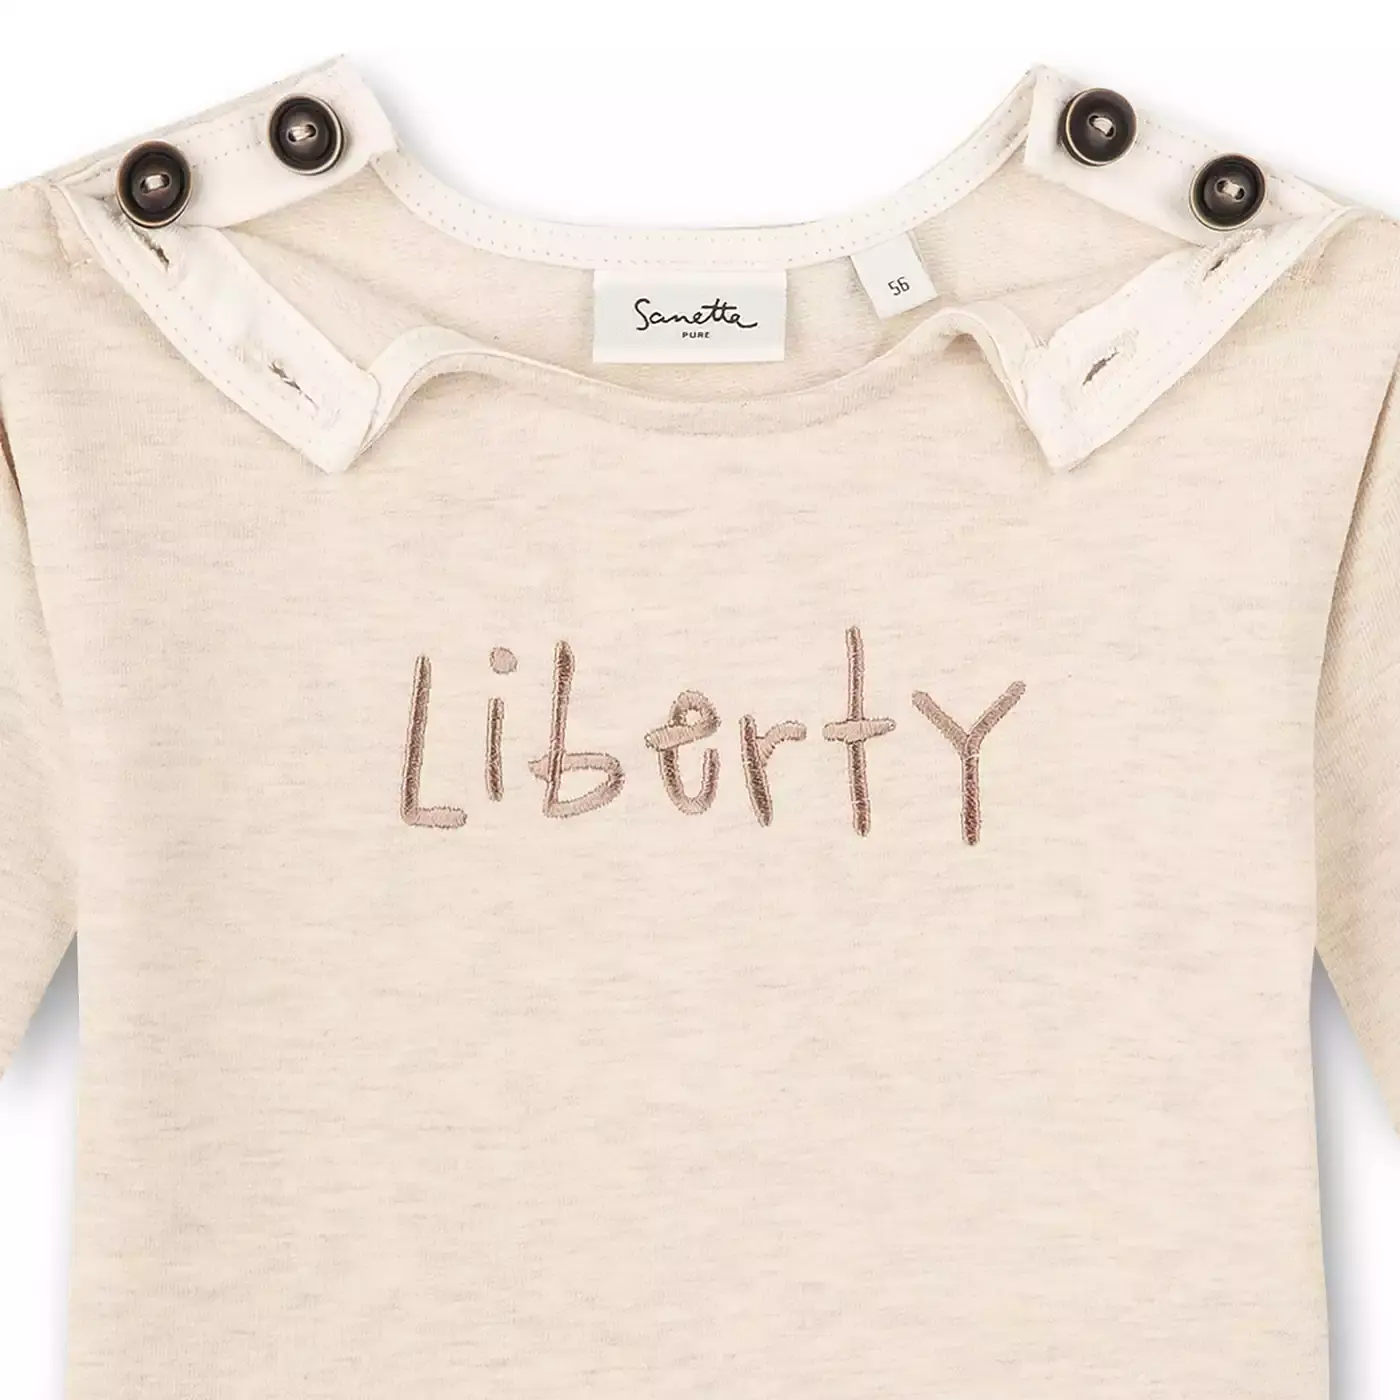 Sweatshirt Liberty Sanetta Beige 2005579865102 4